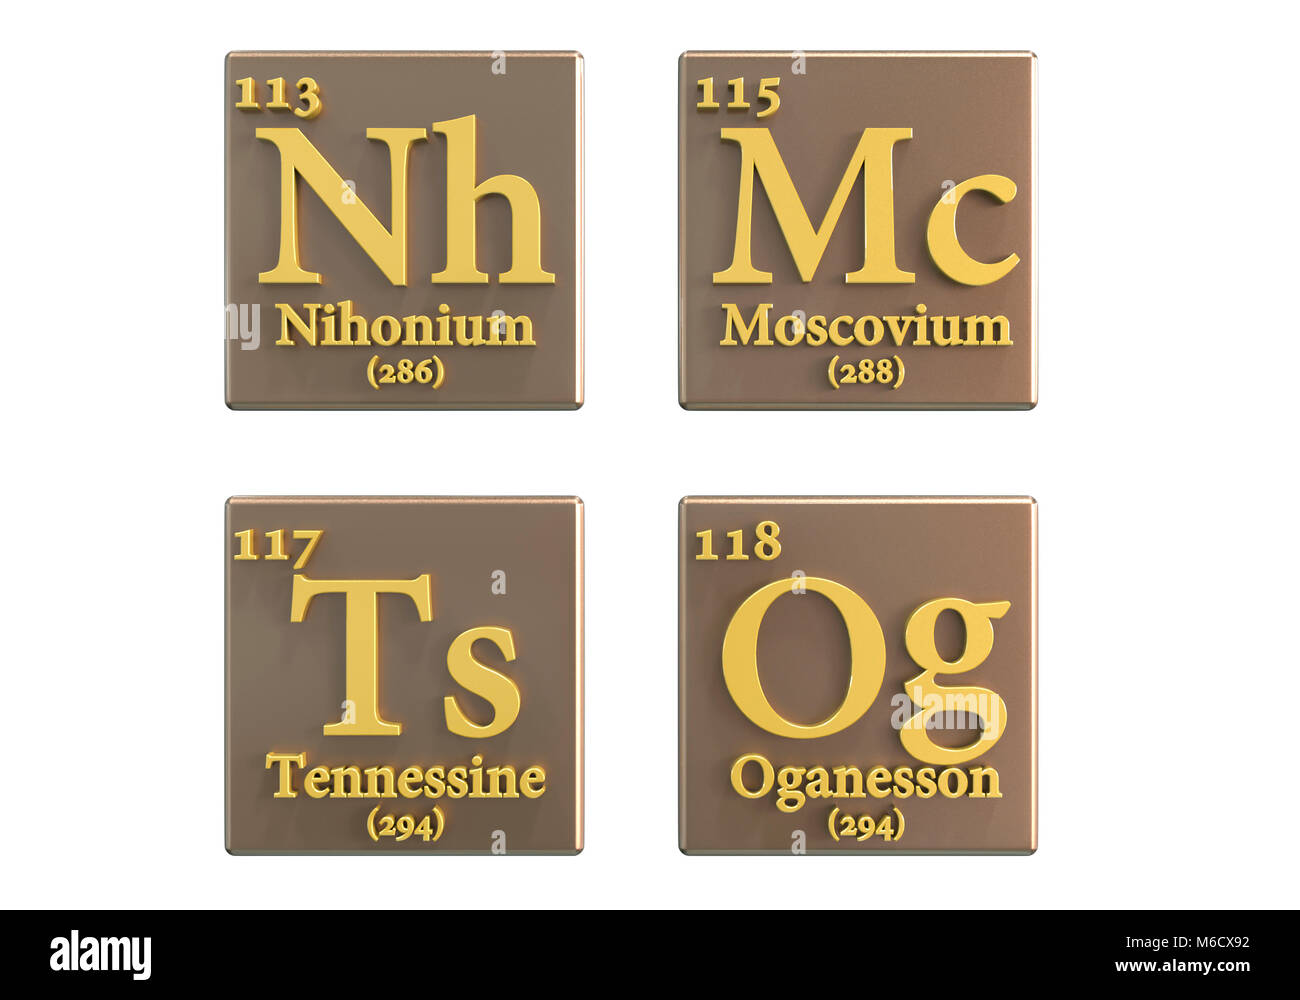 Illustrazione di computer più di recente gli elementi aggiunti alla tavola periodica (all'inizio del 2018). Essi sono; 113 niobio (NH), 115 Moscovium (Mc), 117 Tennessin (Ts) e 118 Oganesson (Og). Foto Stock